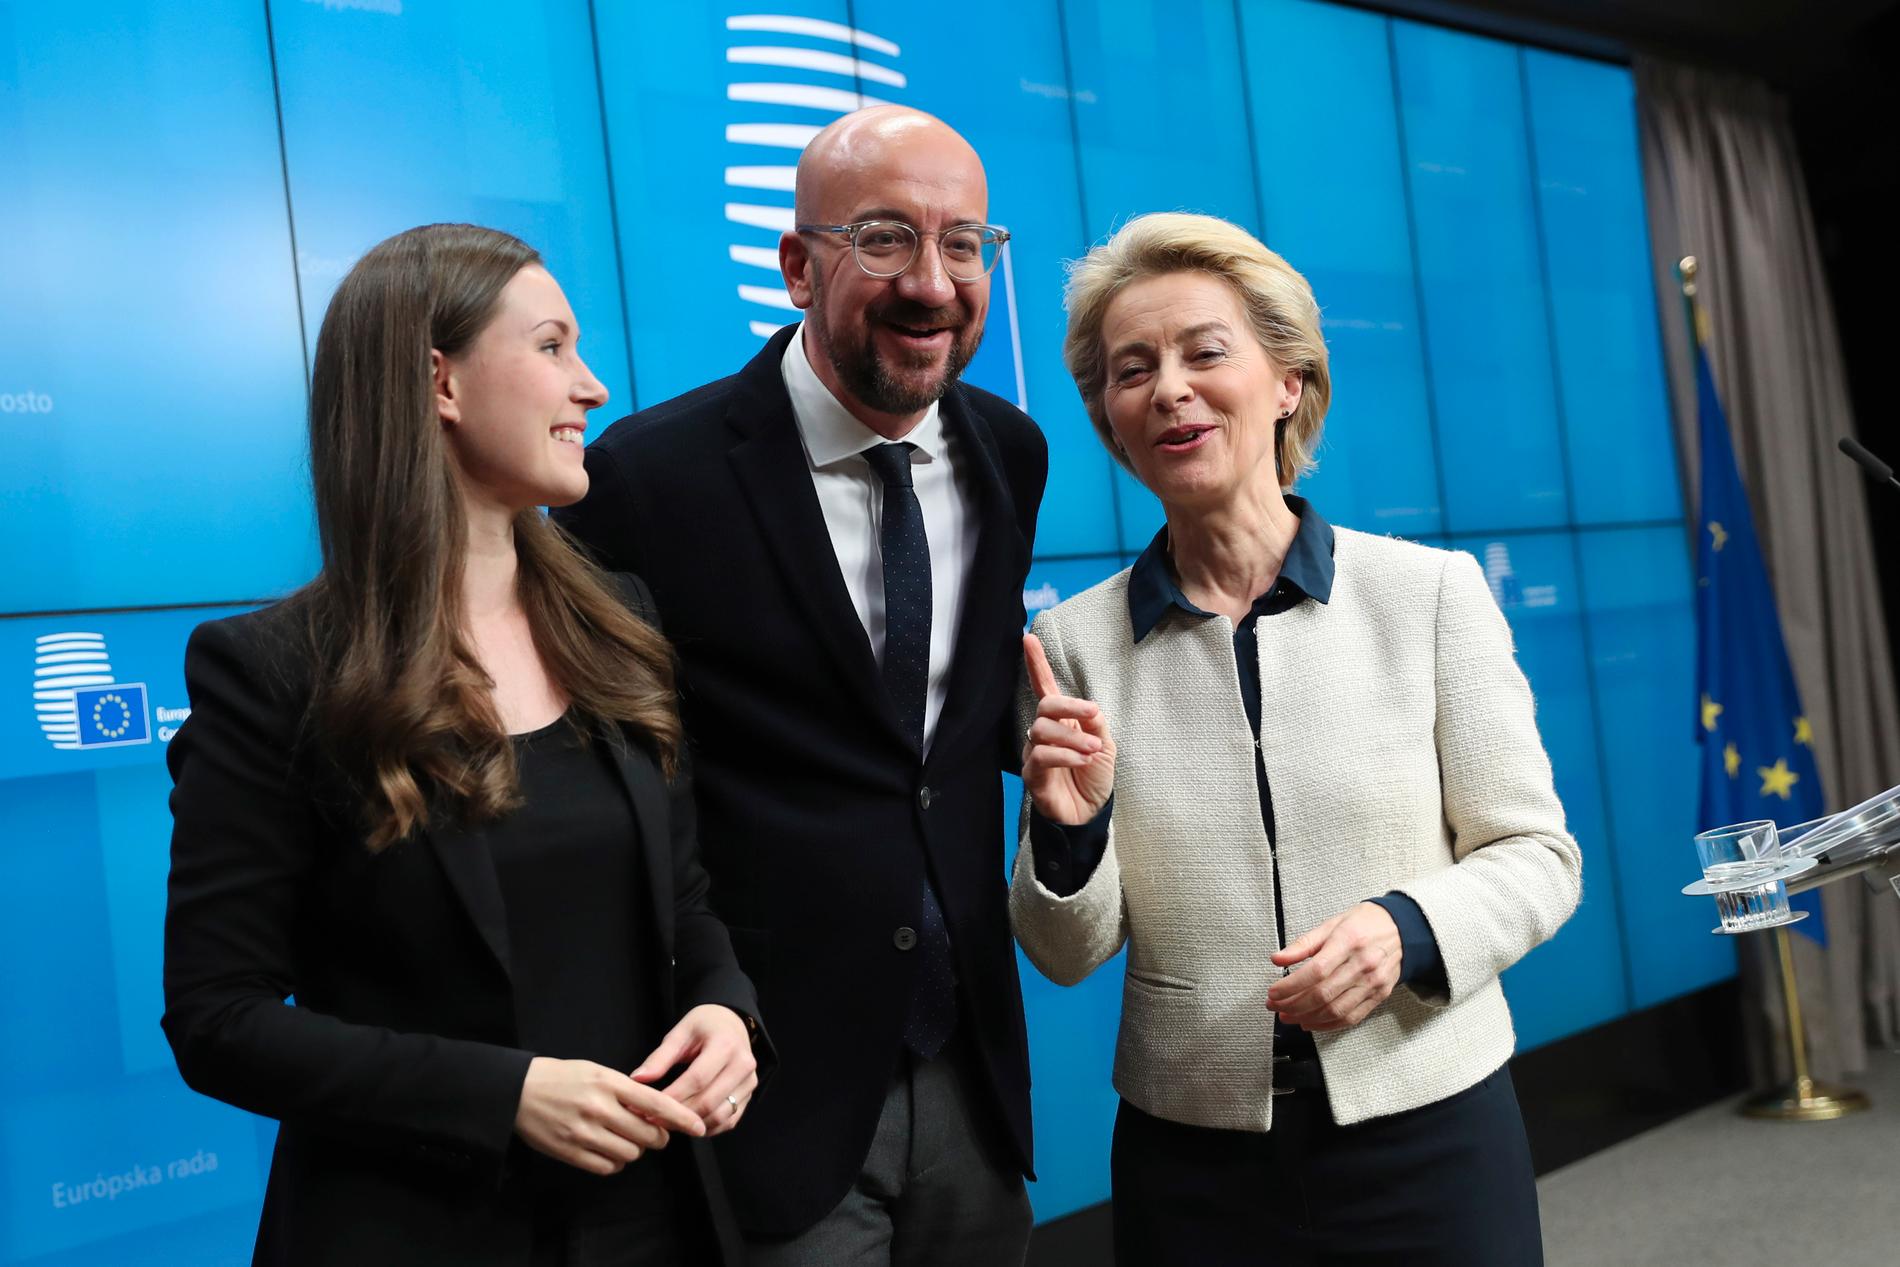 EU:s nye permanente rådsordförande Charles Michel i mitten, flankerad av ordförandelandet Finlands statsminister Sanna Marin till vänster och nya kommissionsordföranden Ursula von der Leyen till höger.